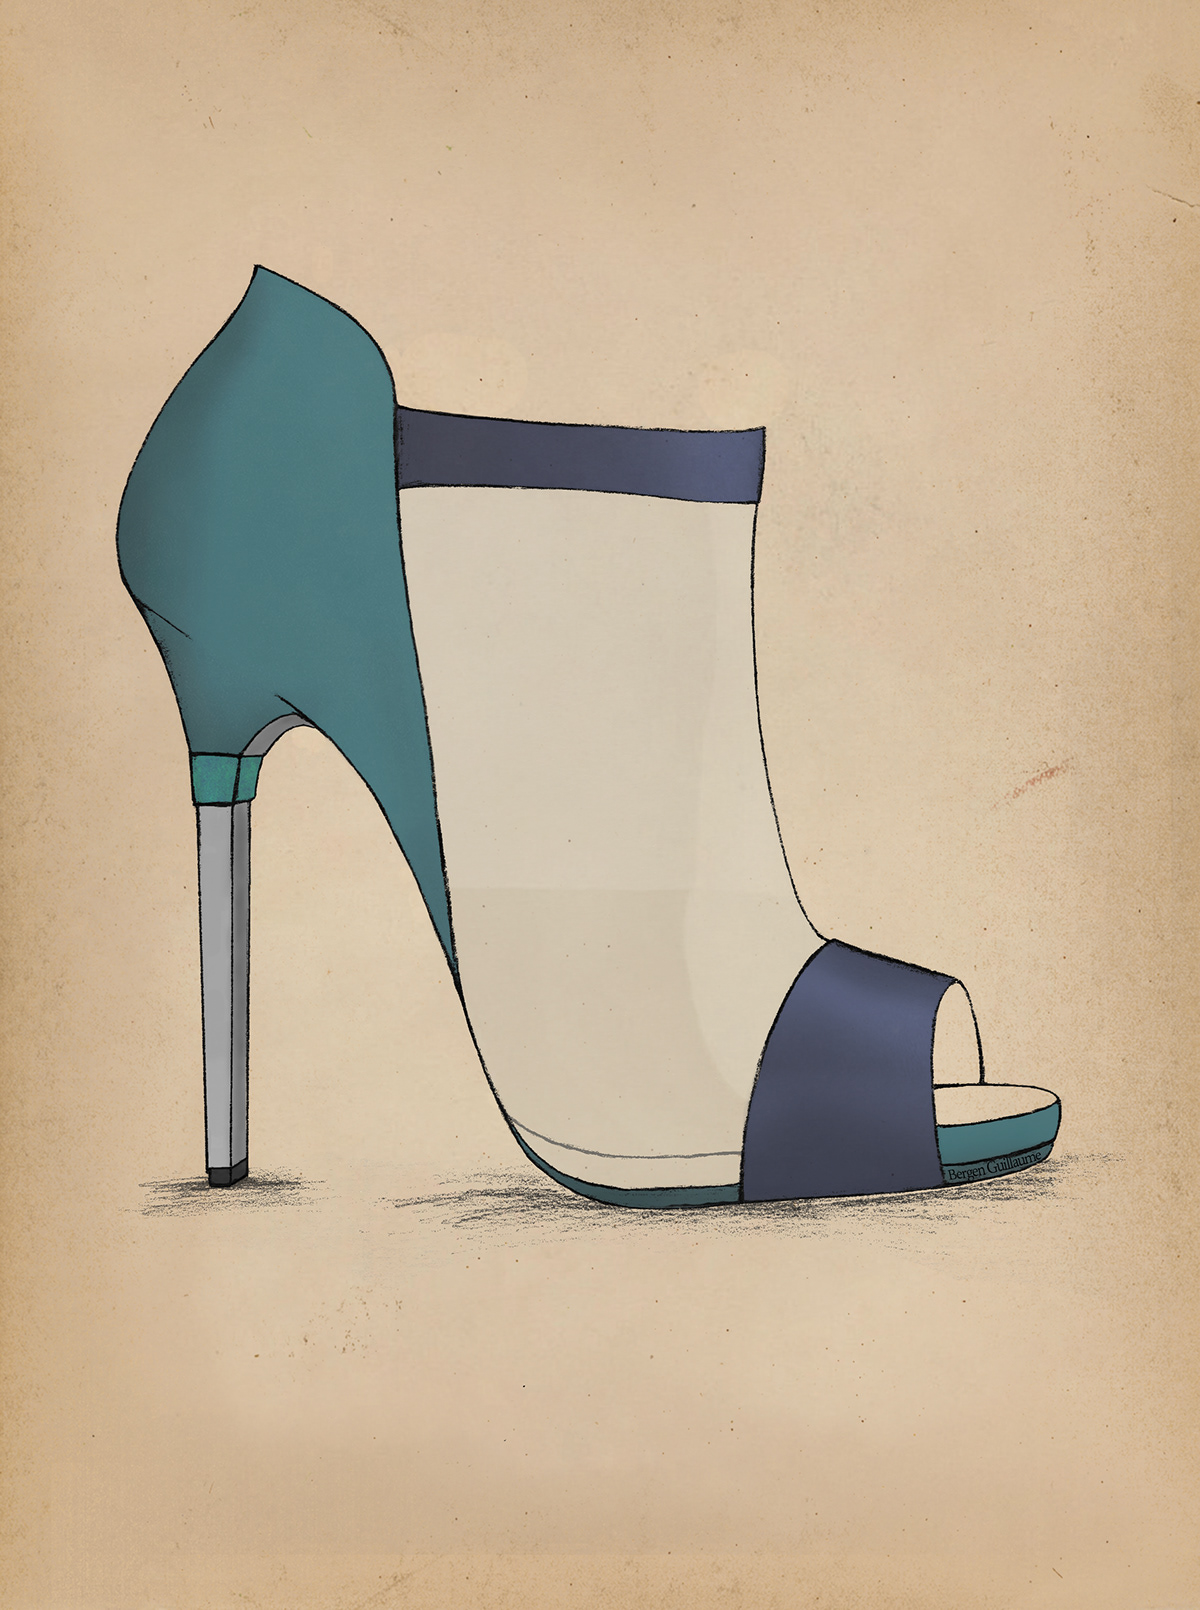 #Fashion #Heel #HeelDesign #Pump fashionillustration #guillaumebergen